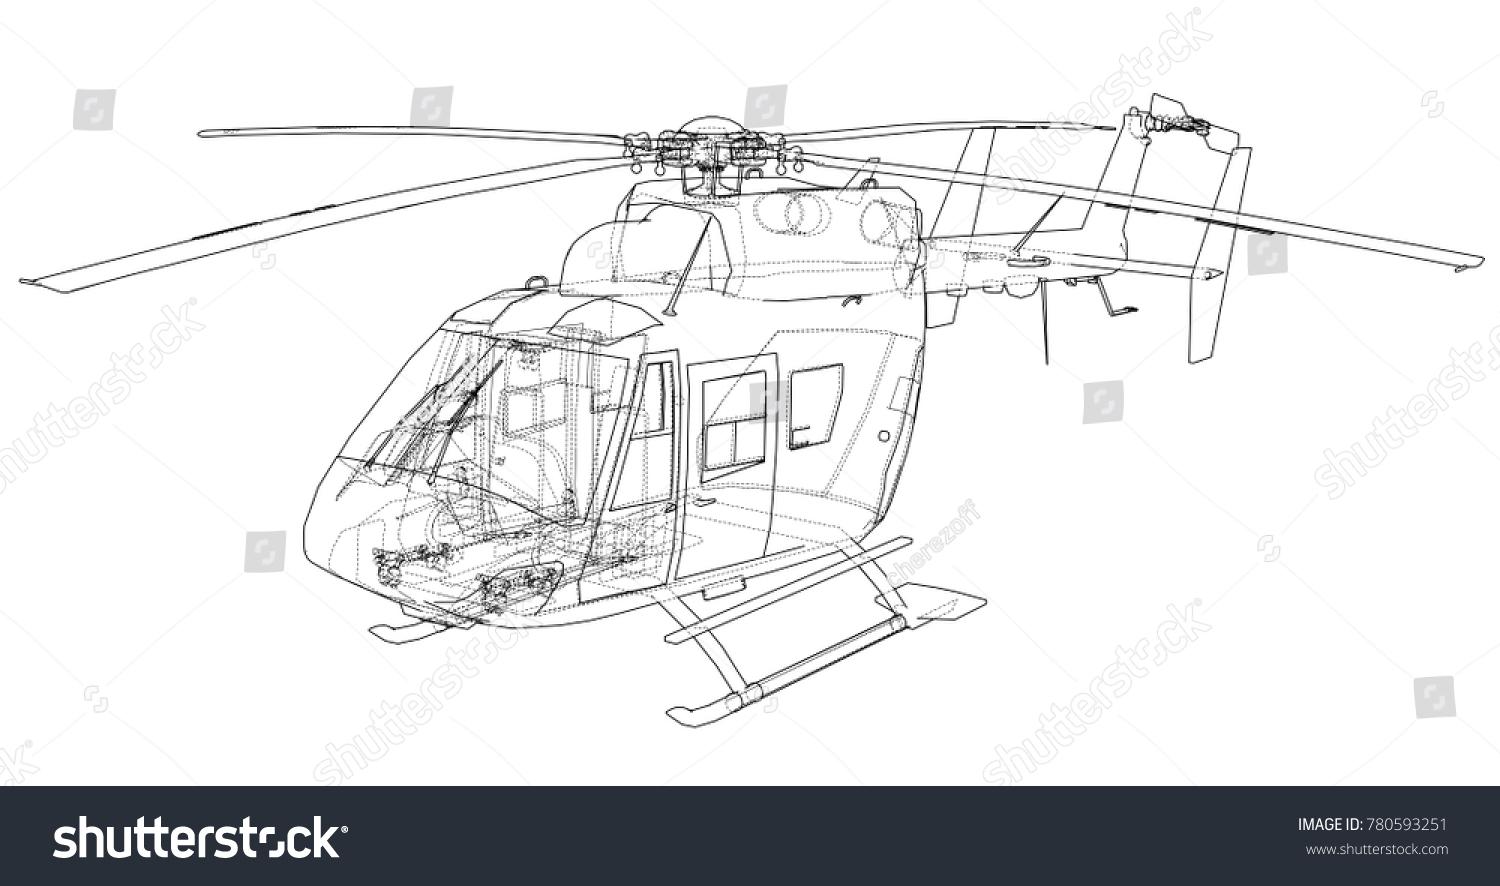 Dog Flex 2 - Helicopter - 3d model